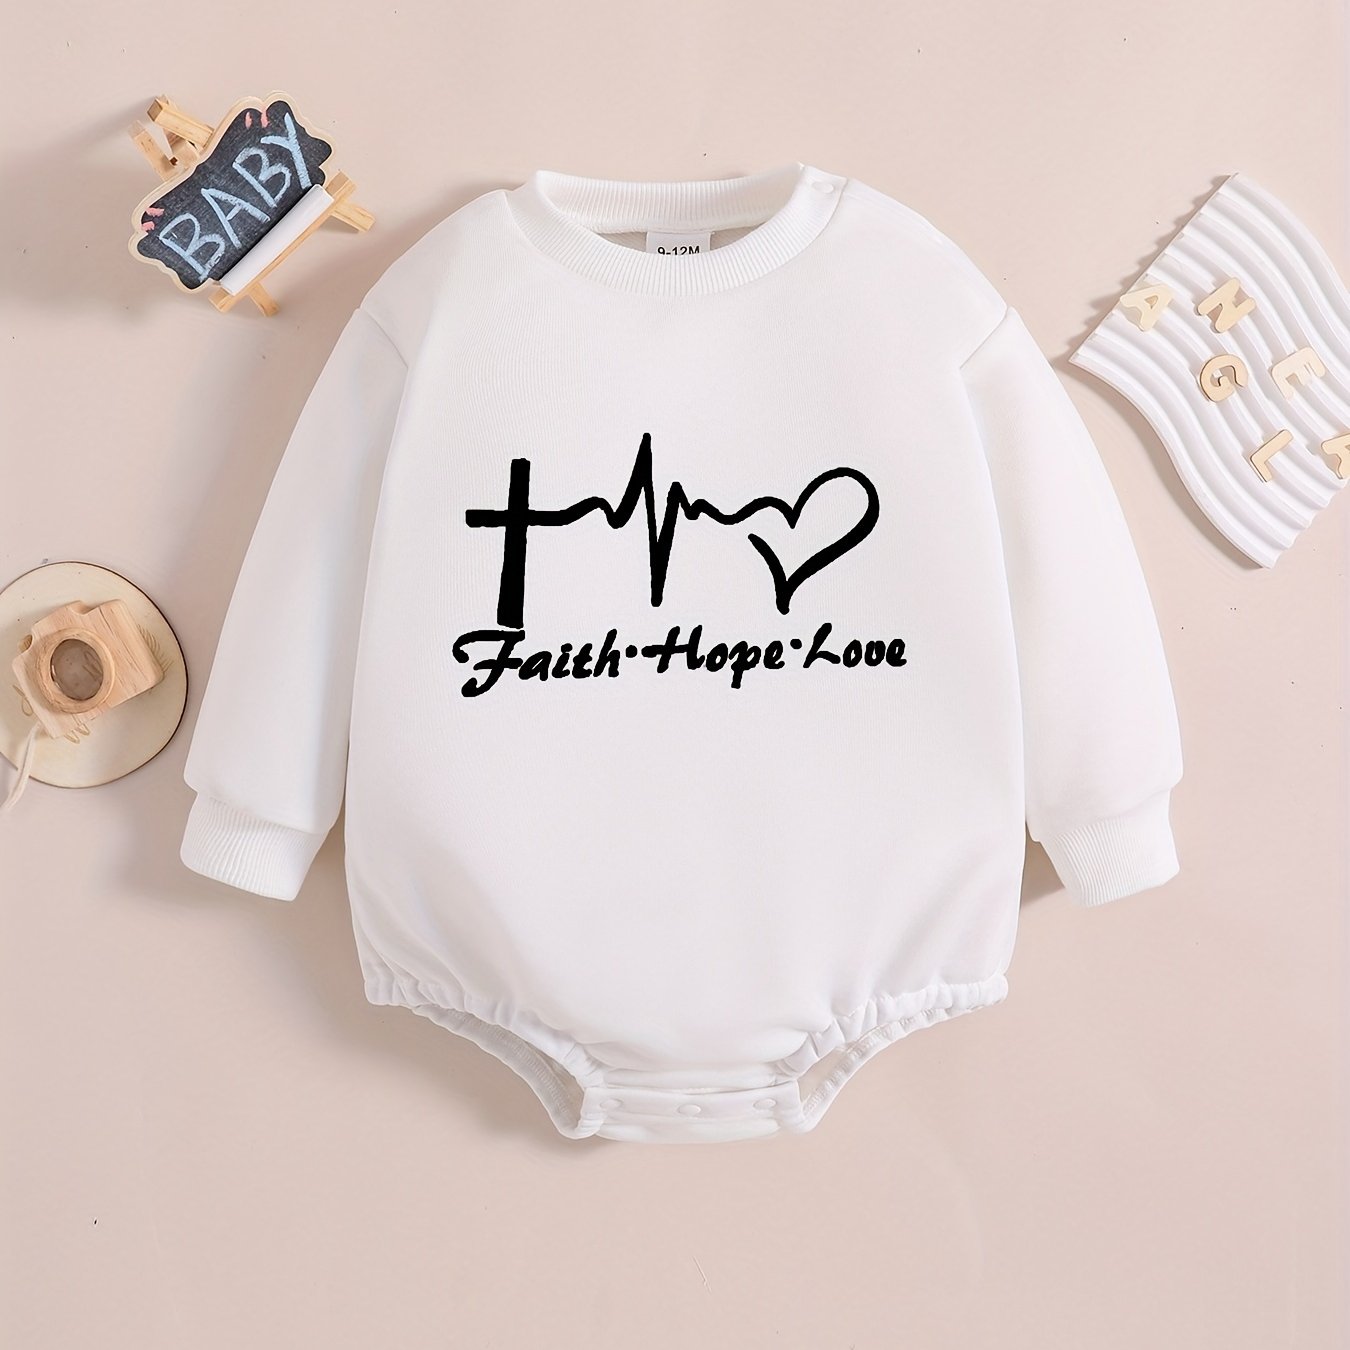 FAITH & HOPE & LOVE Long Sleeve Christian Baby Onesie claimedbygoddesigns